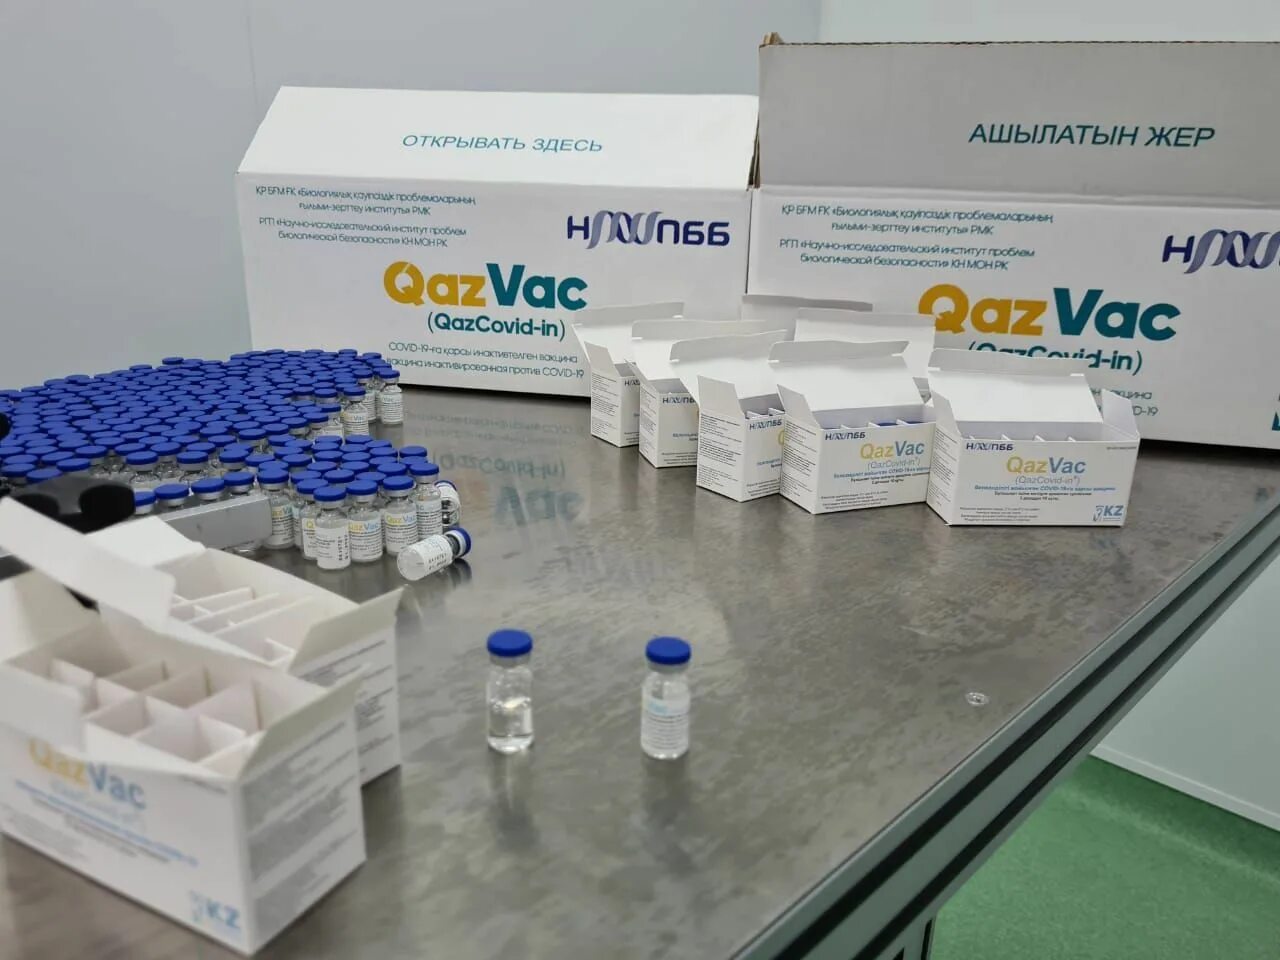 Qazvac. Воз вакцина от коронавируса. Казвак картинки. Казахстанская соплиника. Вакцина казахстан